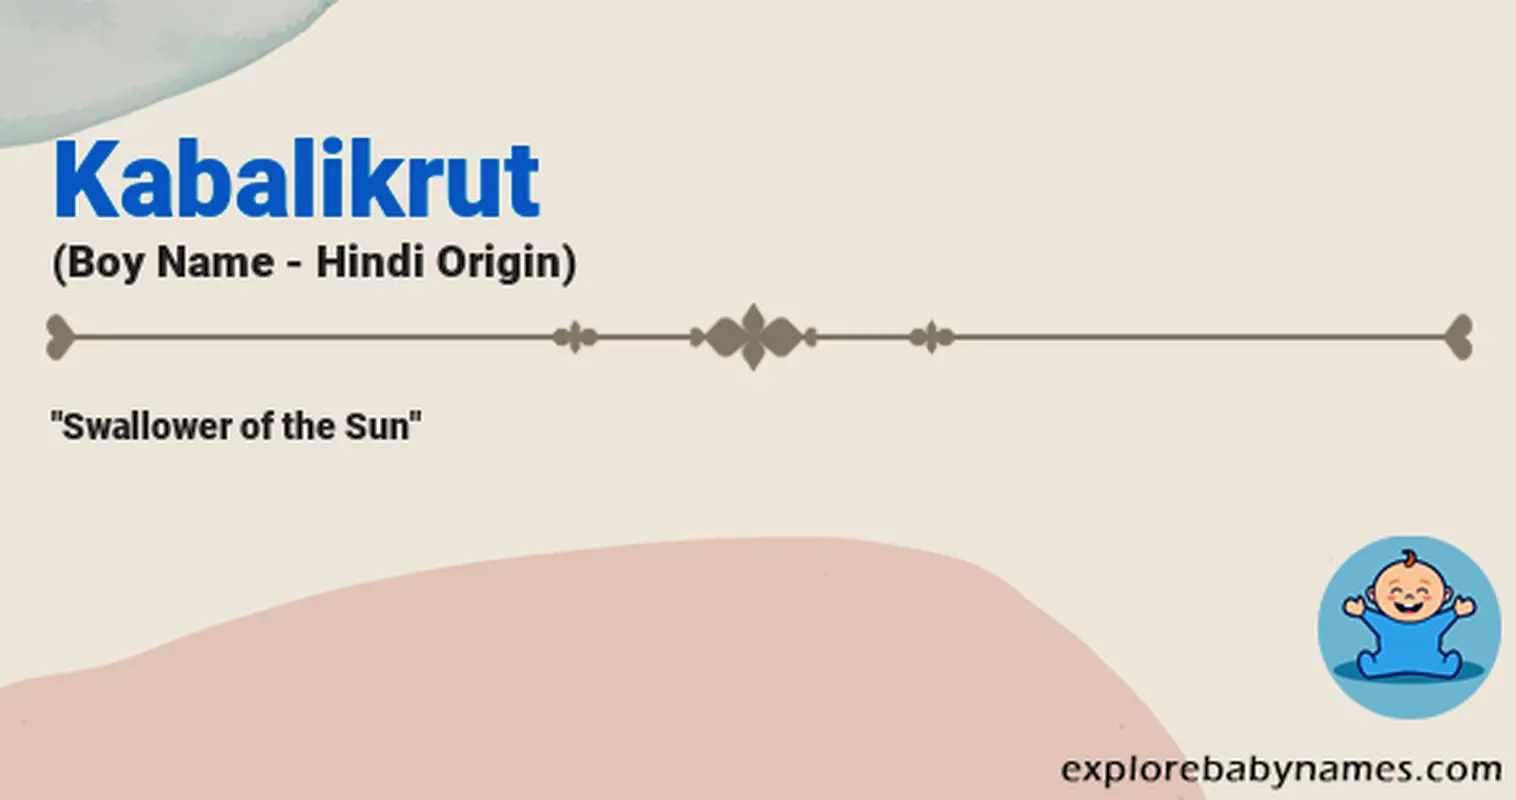 Meaning of Kabalikrut